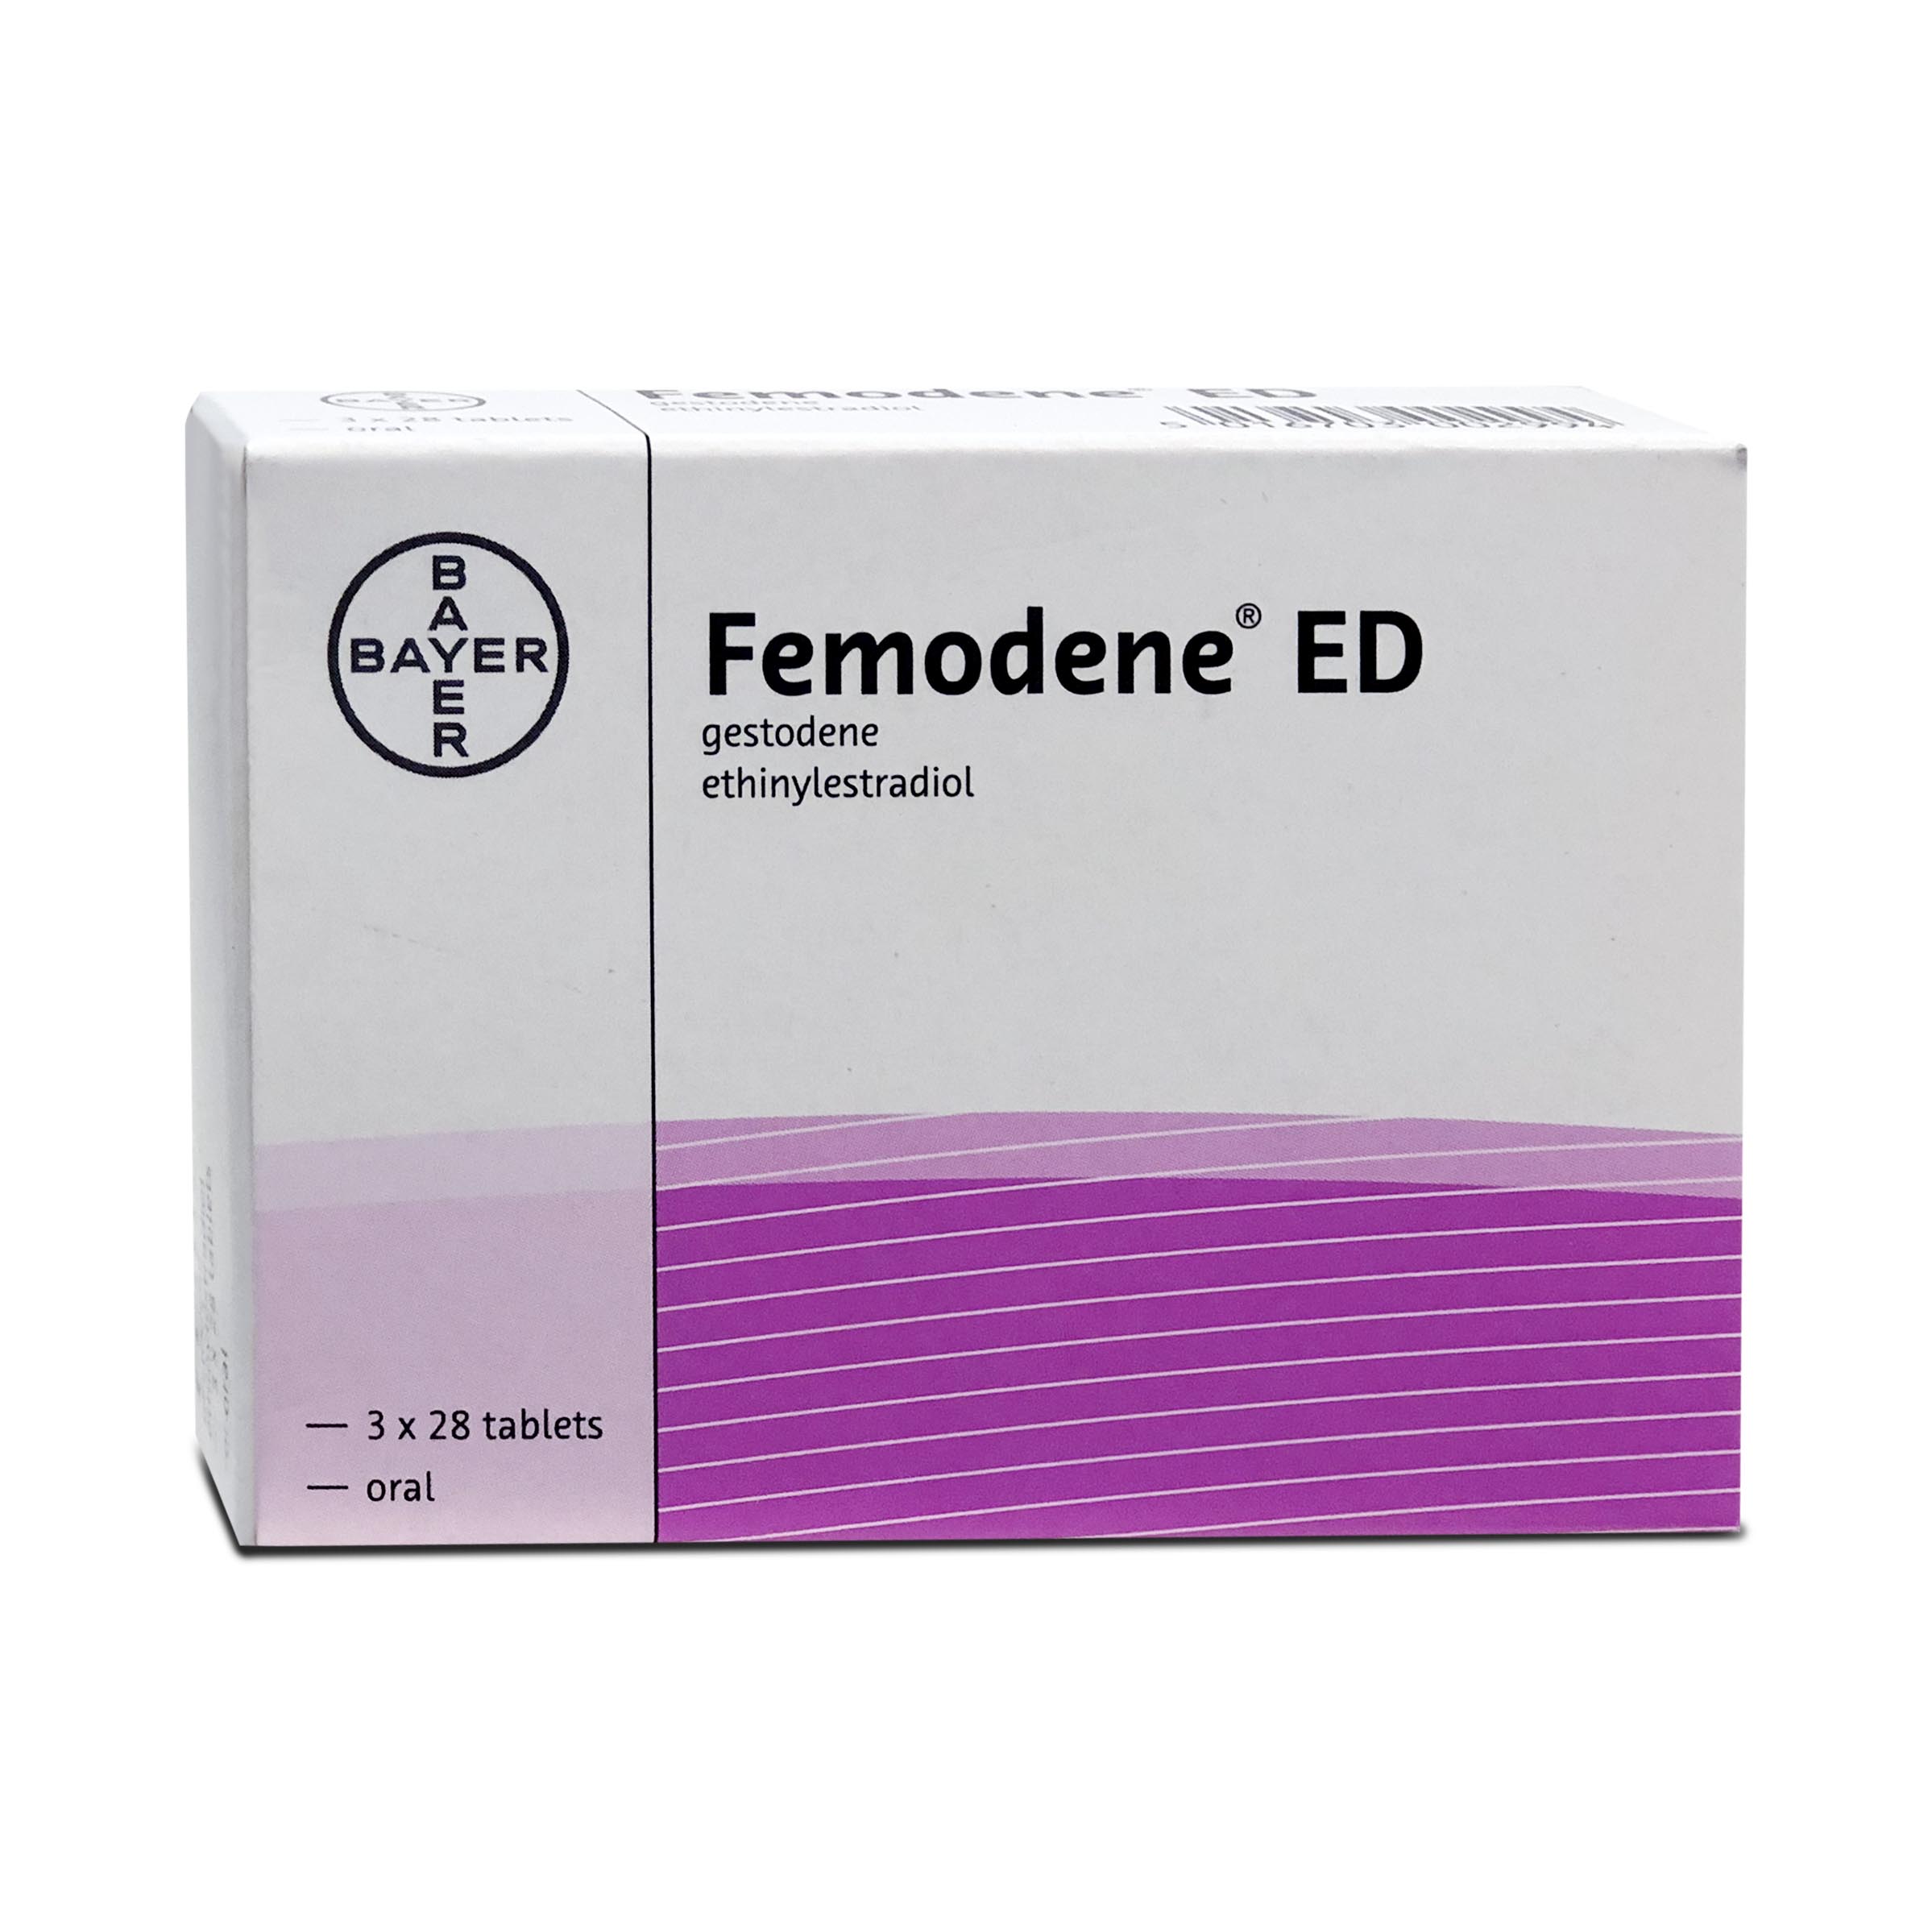 Femodene ED 3 x 28 tablets Bayer